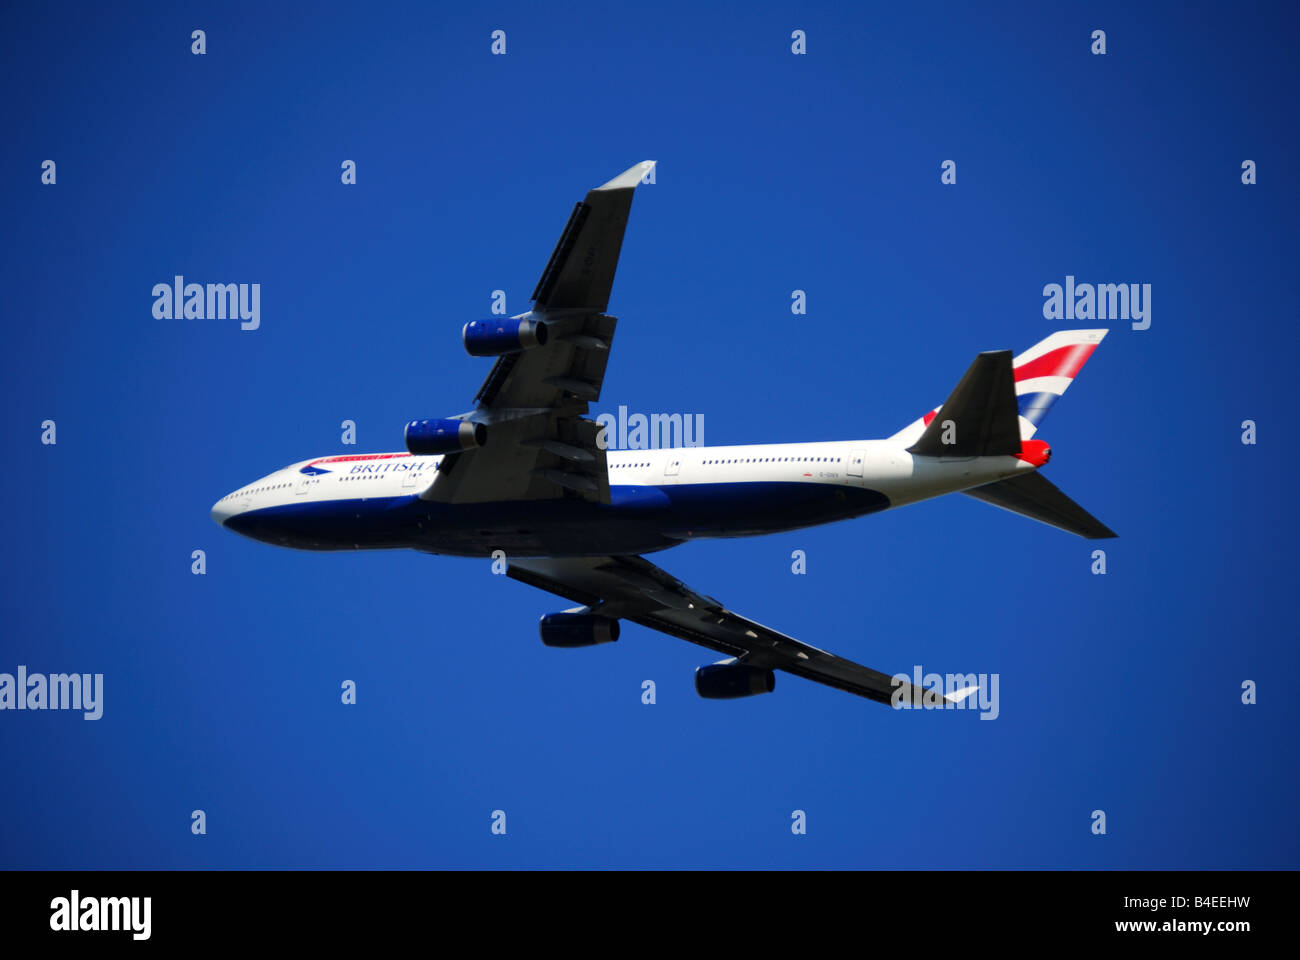 British Airways BA Boeing 747-400 au décollage, l'aéroport de Heathrow, Londres, Angleterre, Royaume-Uni Banque D'Images